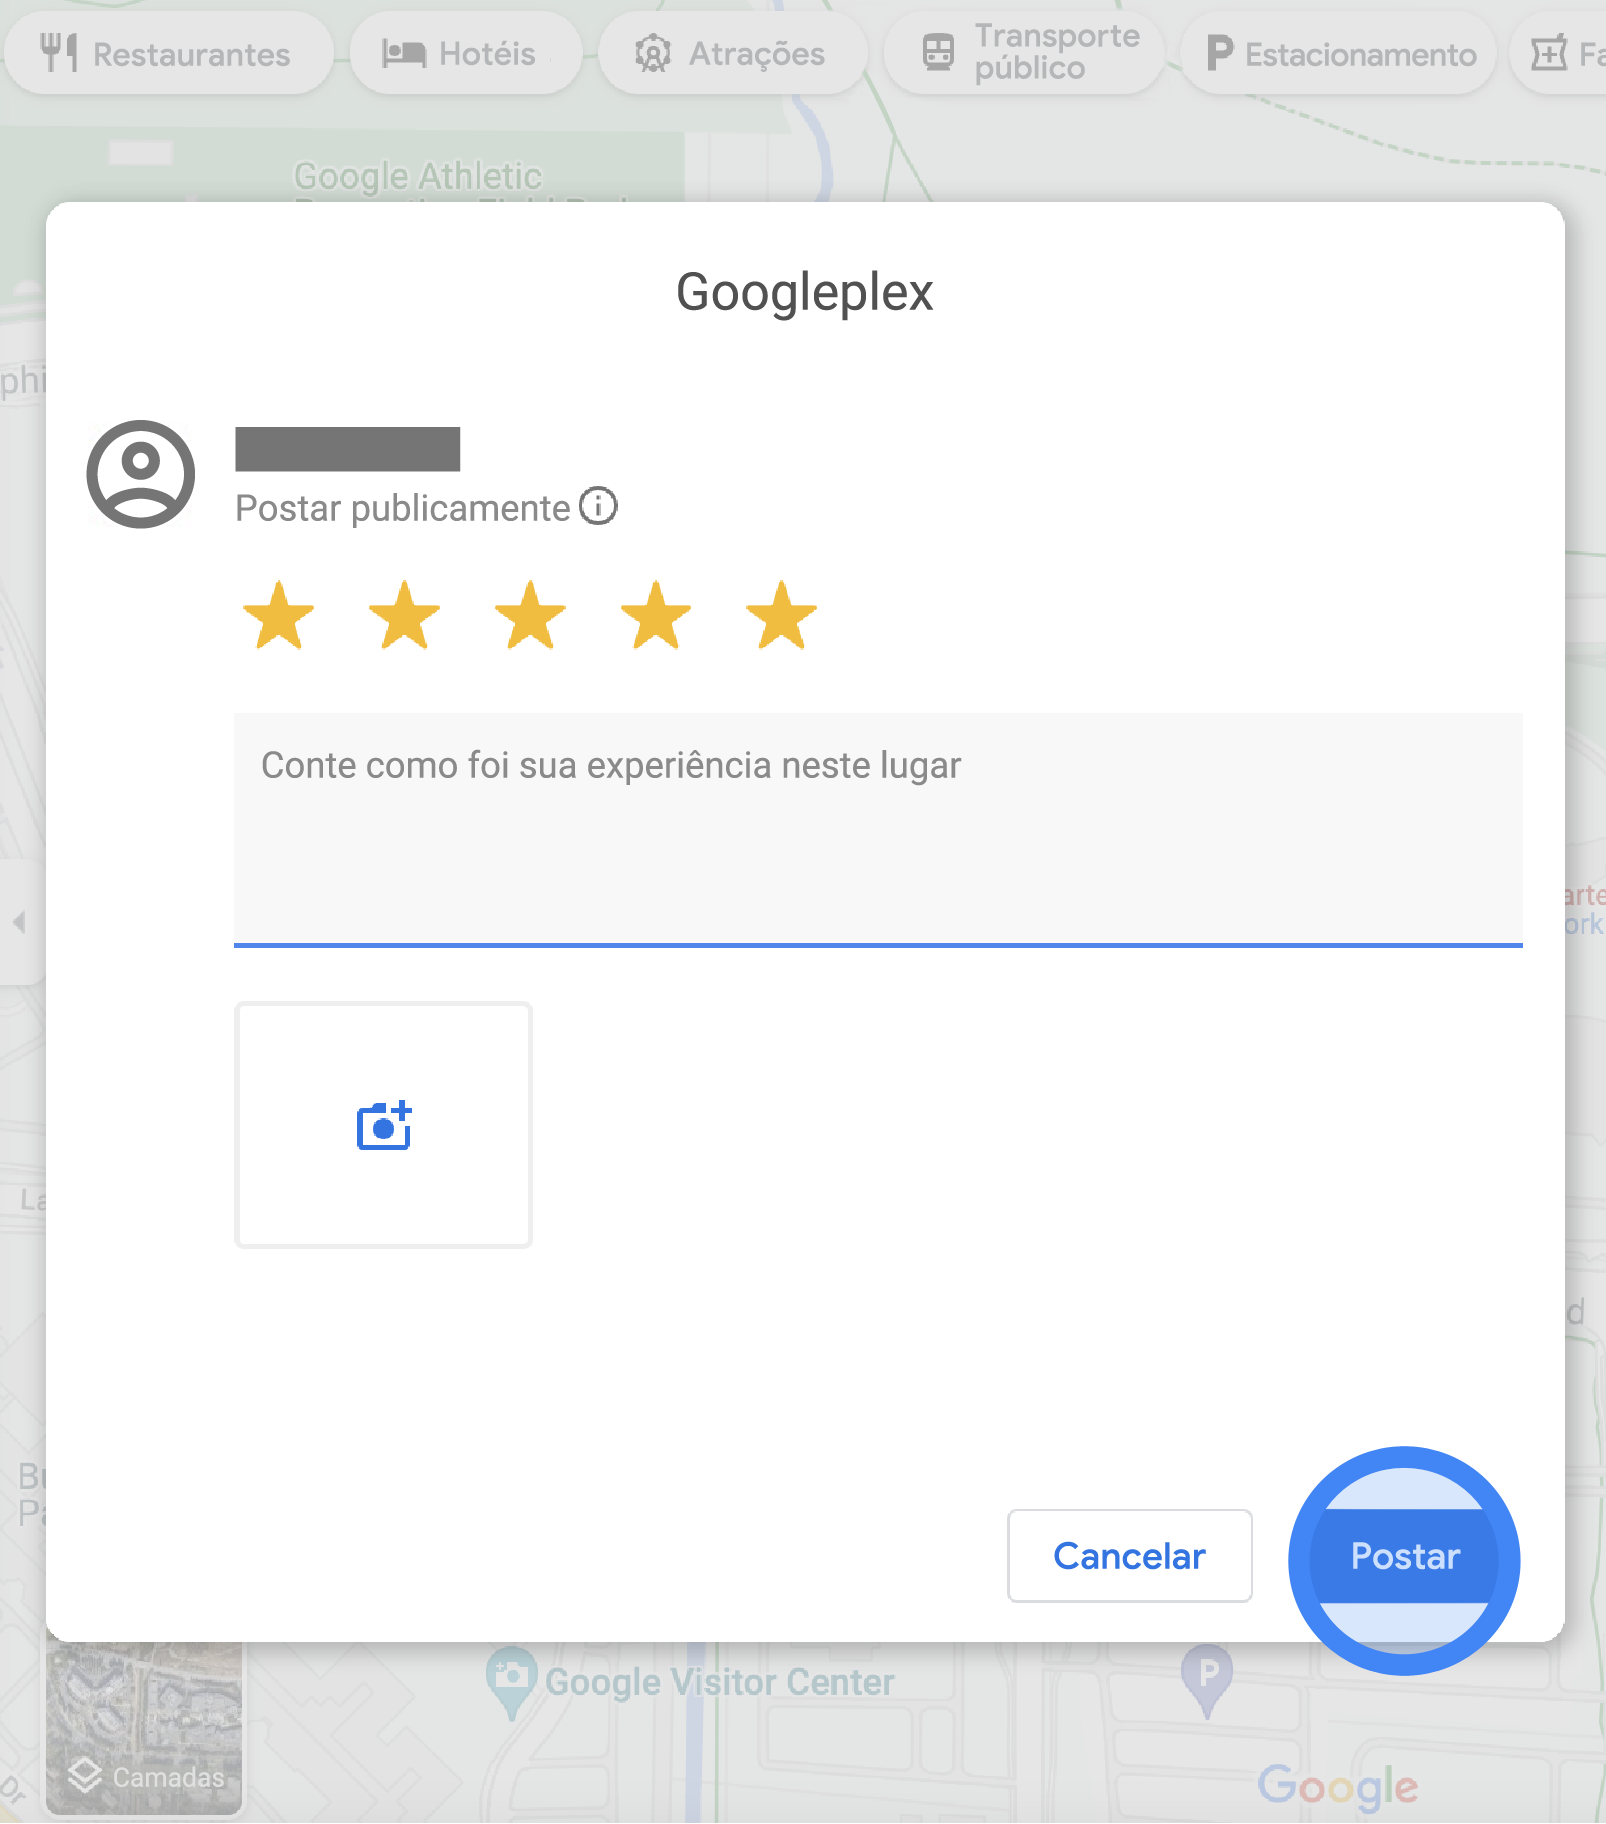 No Google Maps, uma janela pop-up exibe um formulário de avaliação do Googleplex. A classificação possui cinco estrelas selecionadas, há um campo de texto para escrever detalhes sobre a avaliação e um botão com câmera que permite fazer upload de fotos. Na parte inferior da janela pop-up, há os botões "Cancelar" e "Postar".